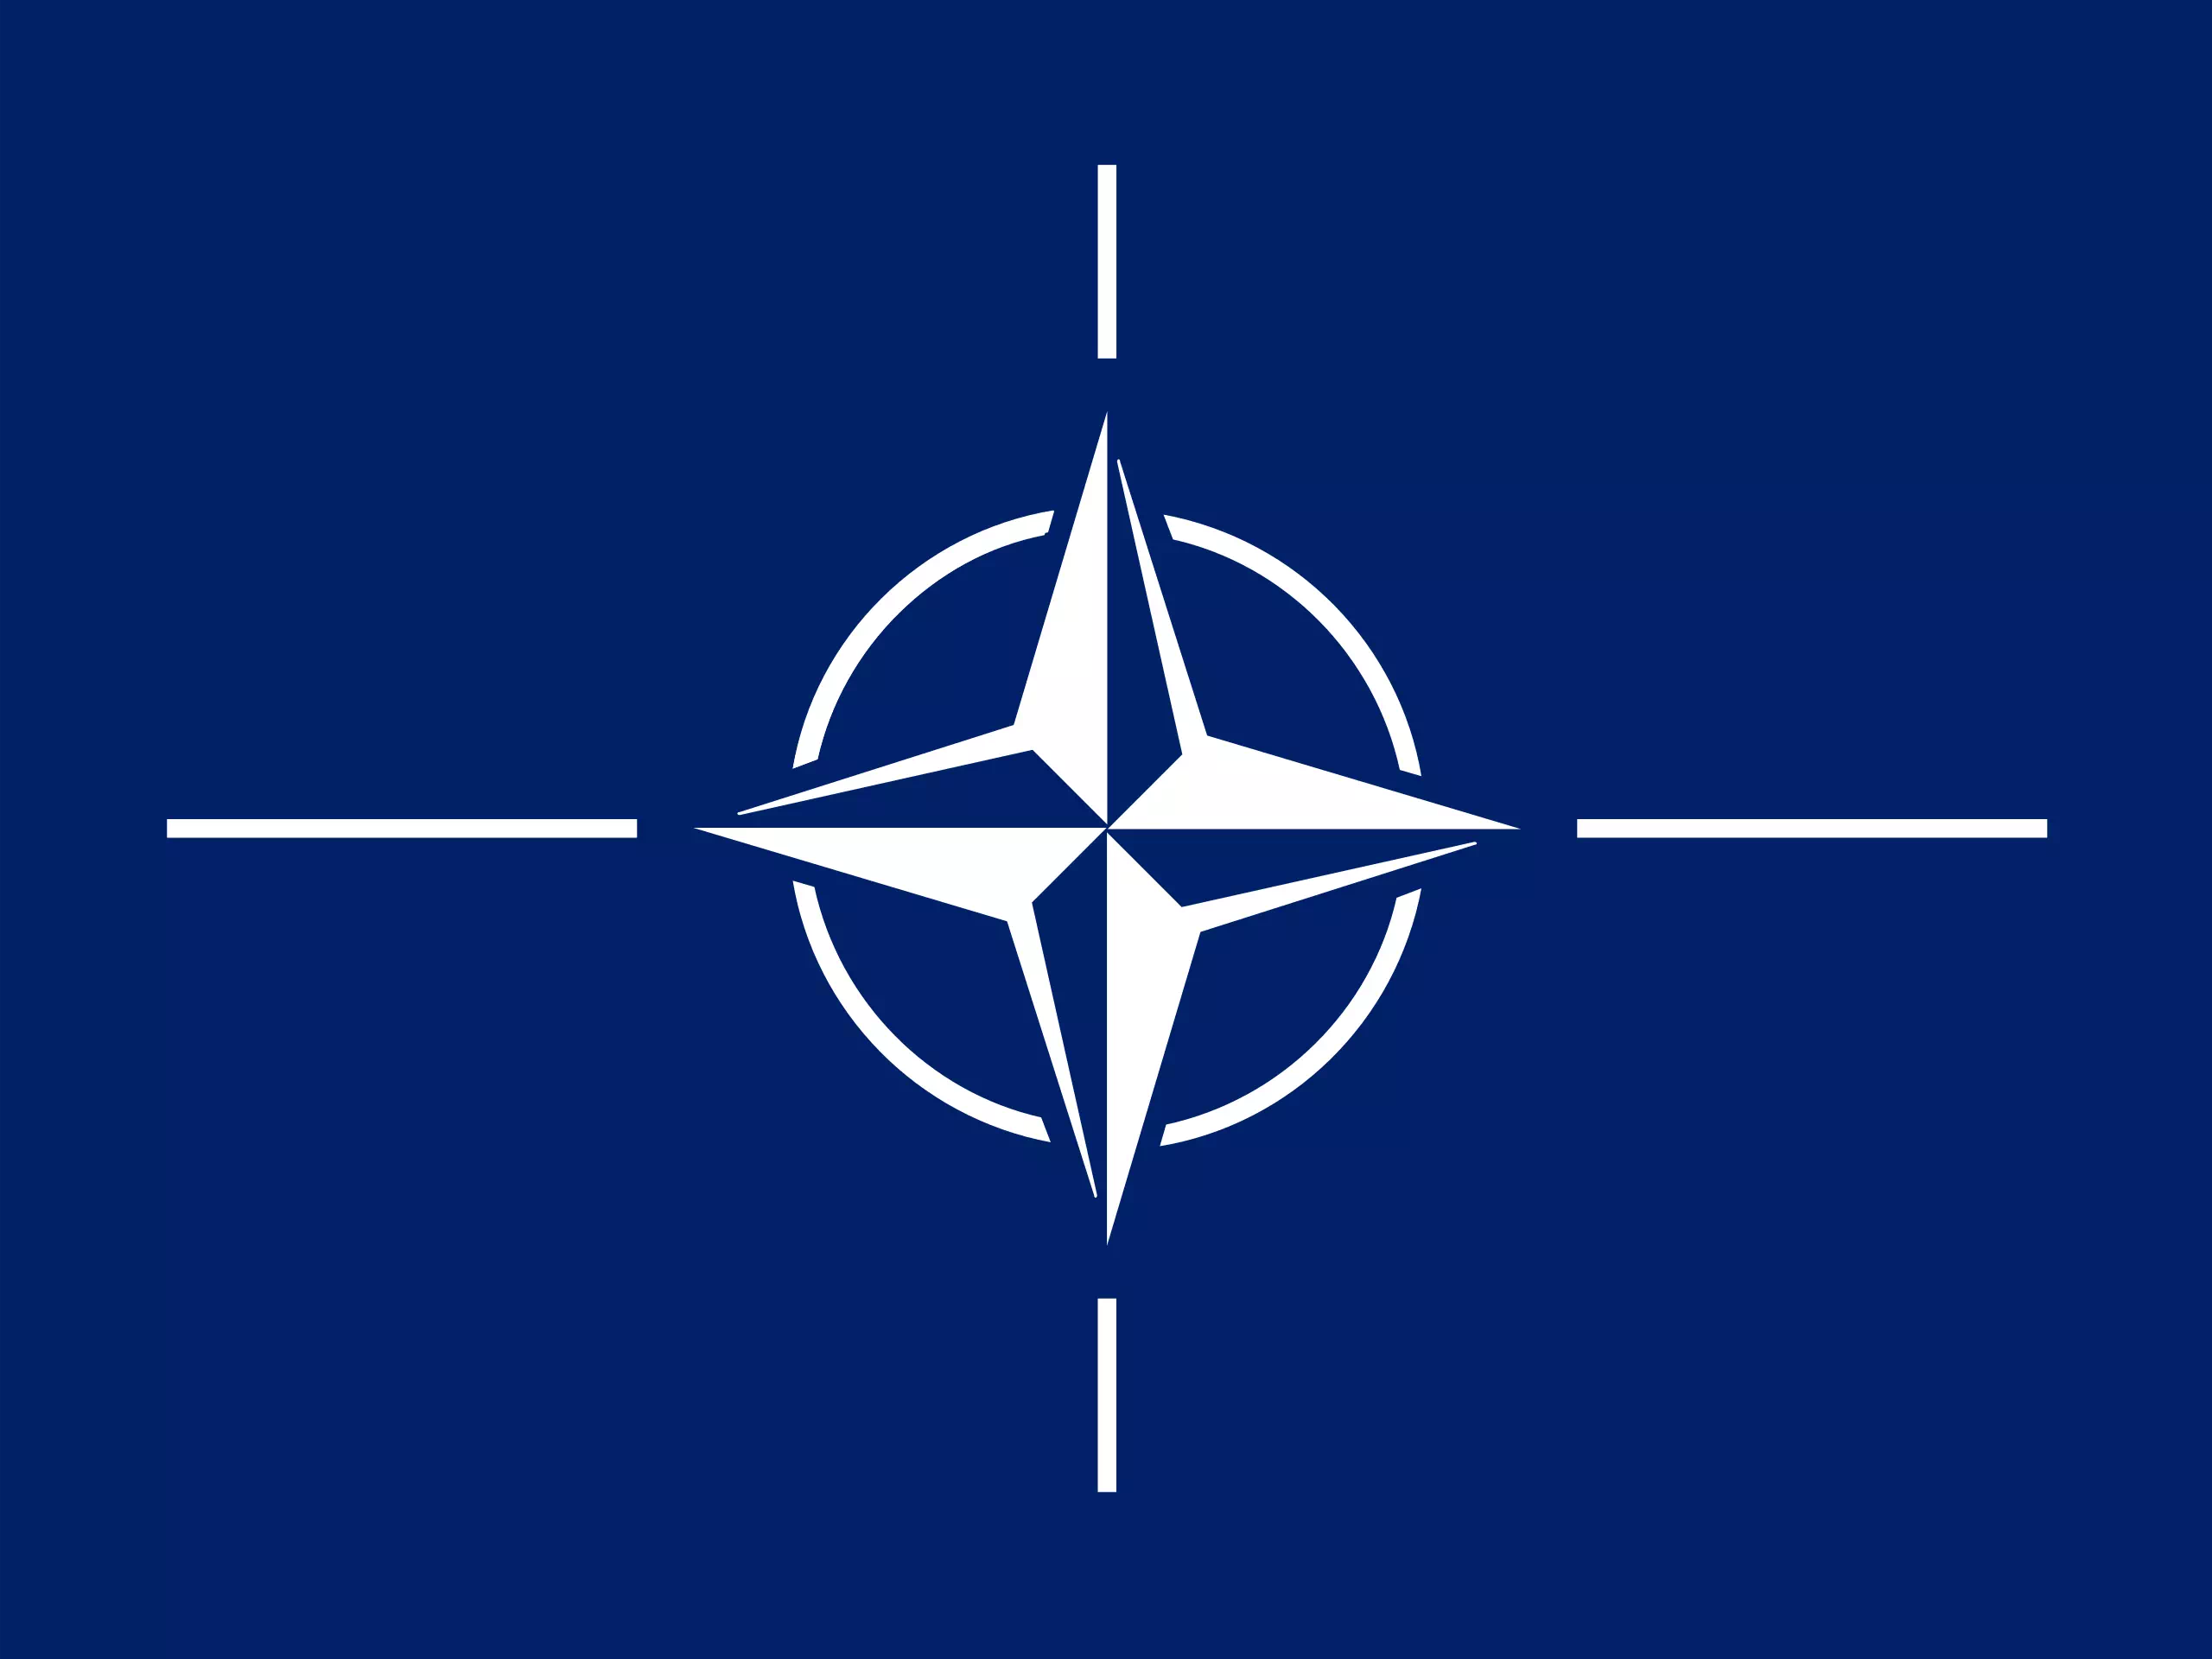 Üçüncü Dünya Savaşı’nın Ayak Sesleri ve NATO’nun Rolü (3)